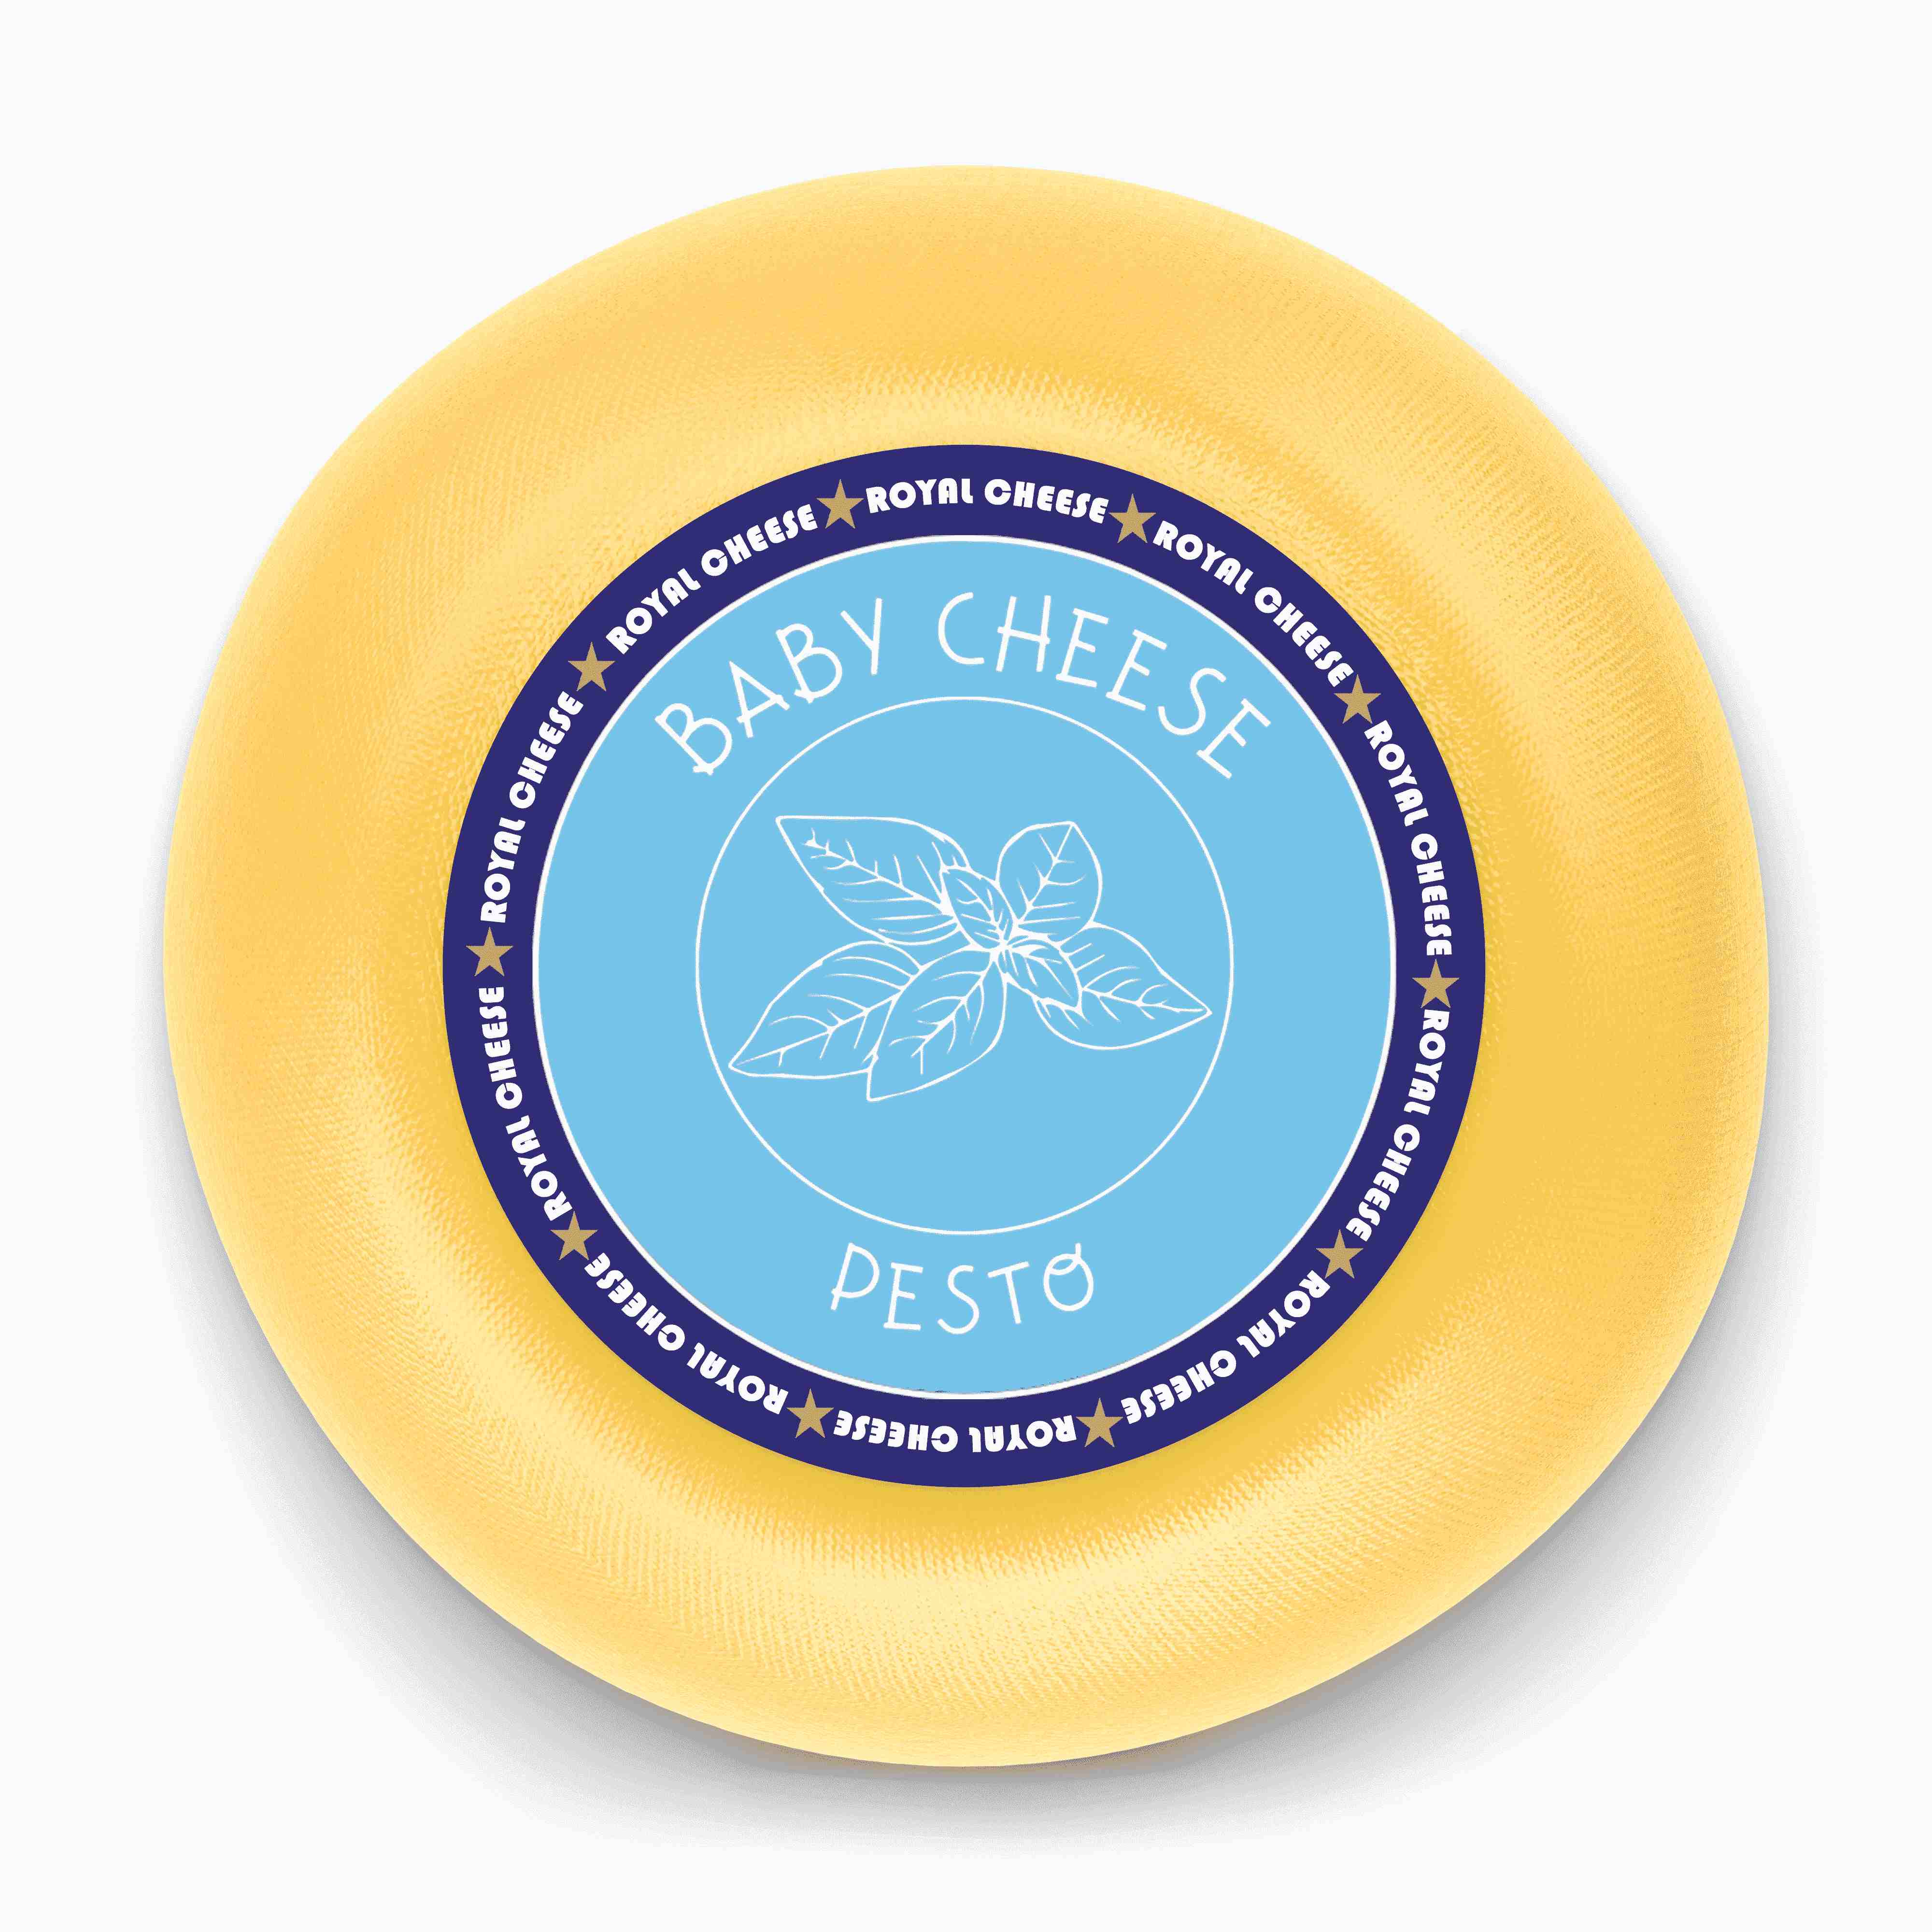 Baby Cheese Pesto